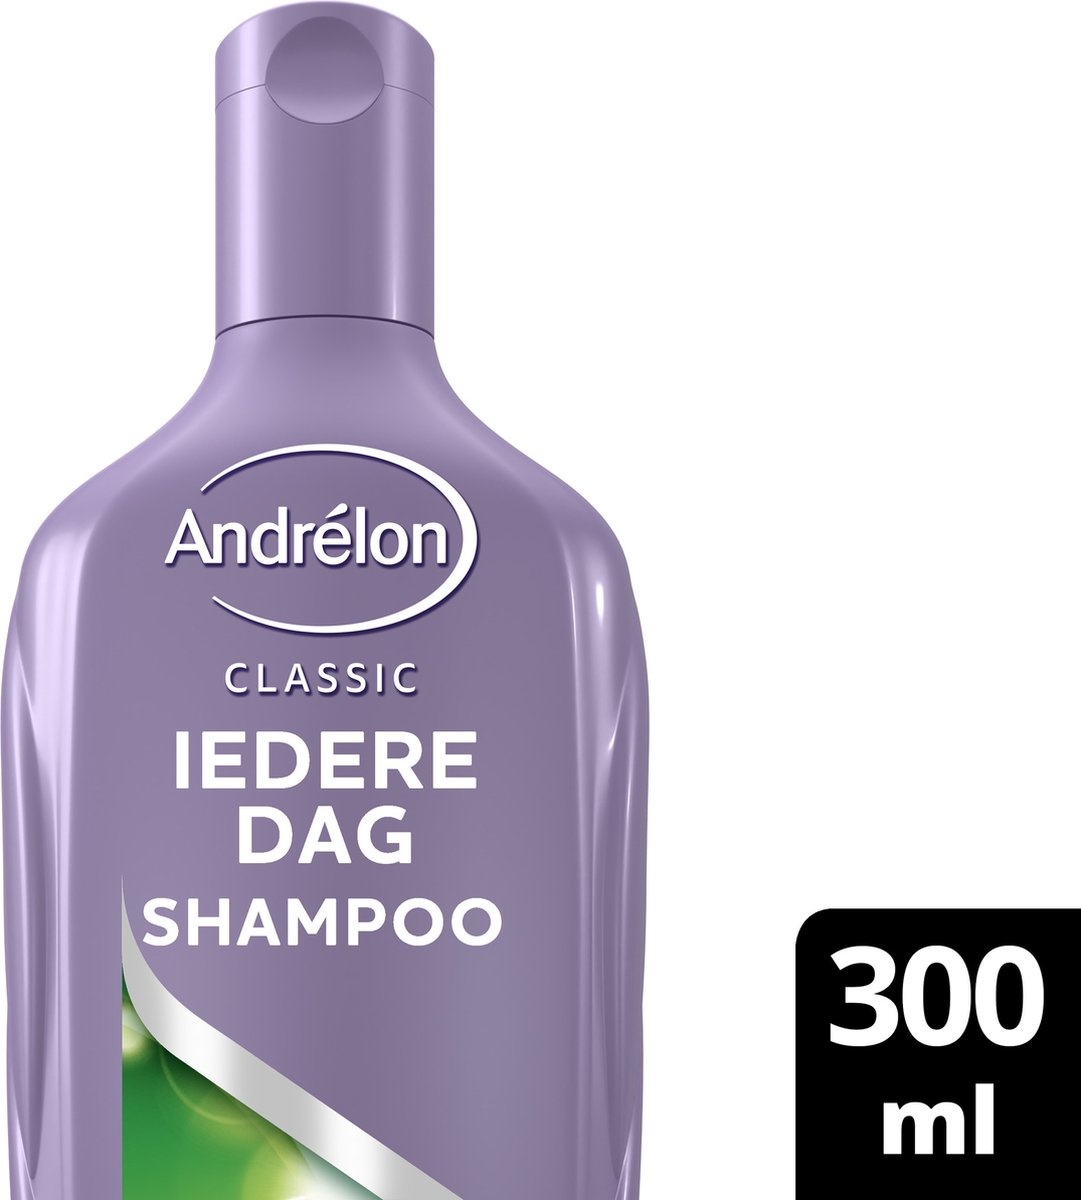 Andrélon Iedere Dag Shampoo 300 ml